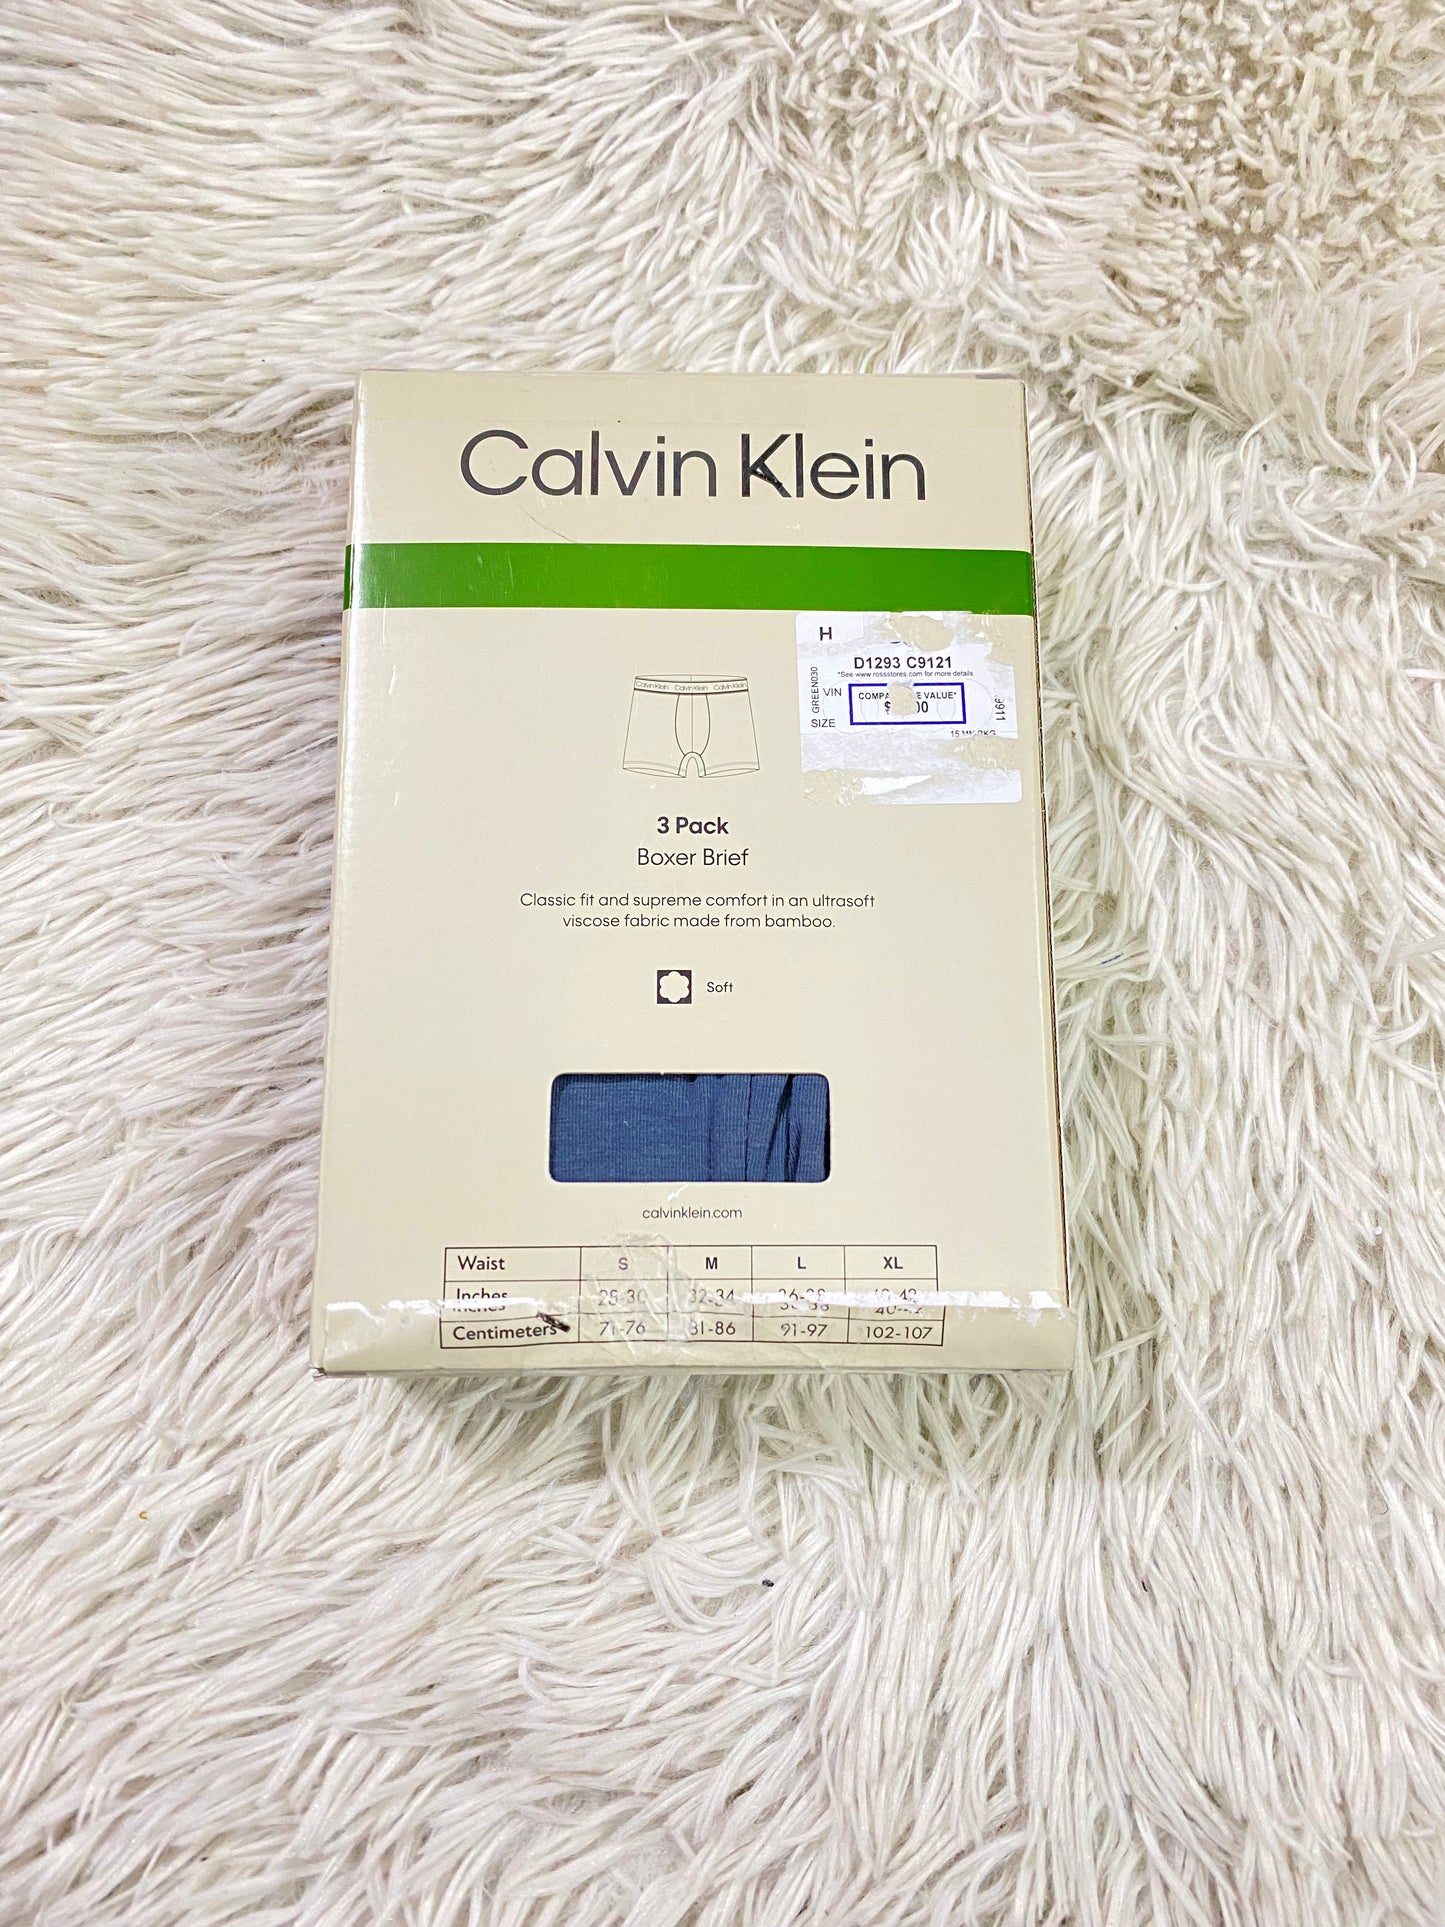 Boxer Calvin Klein original, pack de 3, diferentes colores y letras de la marca en blanco.